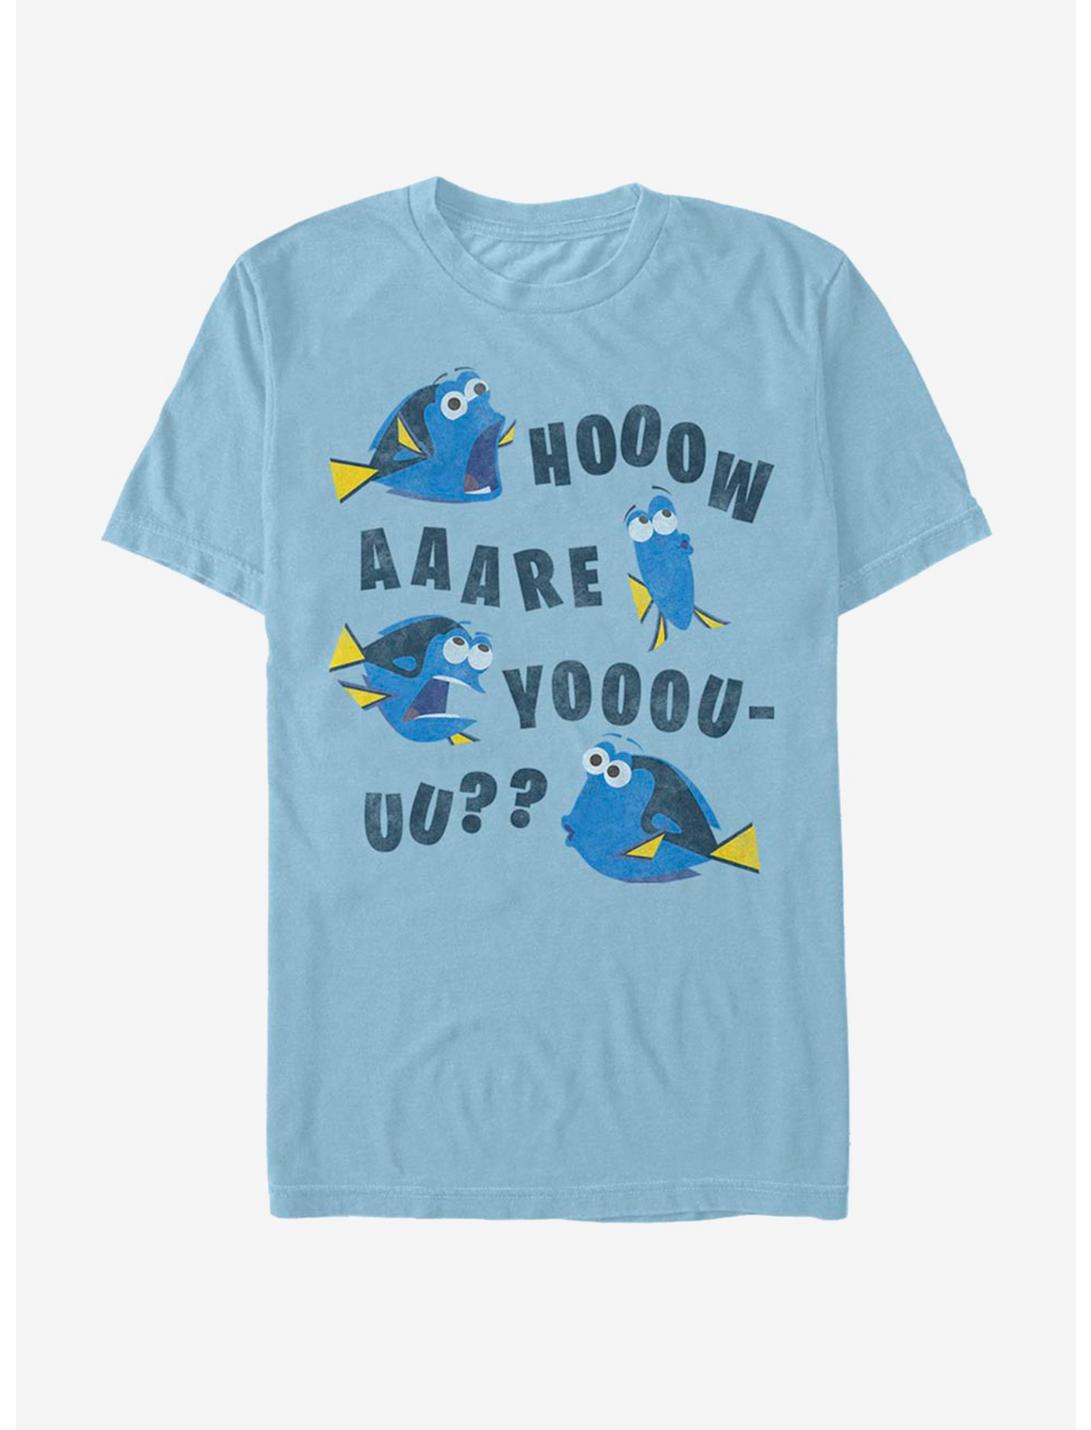 Disney Pixar Finding Dory How R U T-Shirt, LT BLUE, hi-res